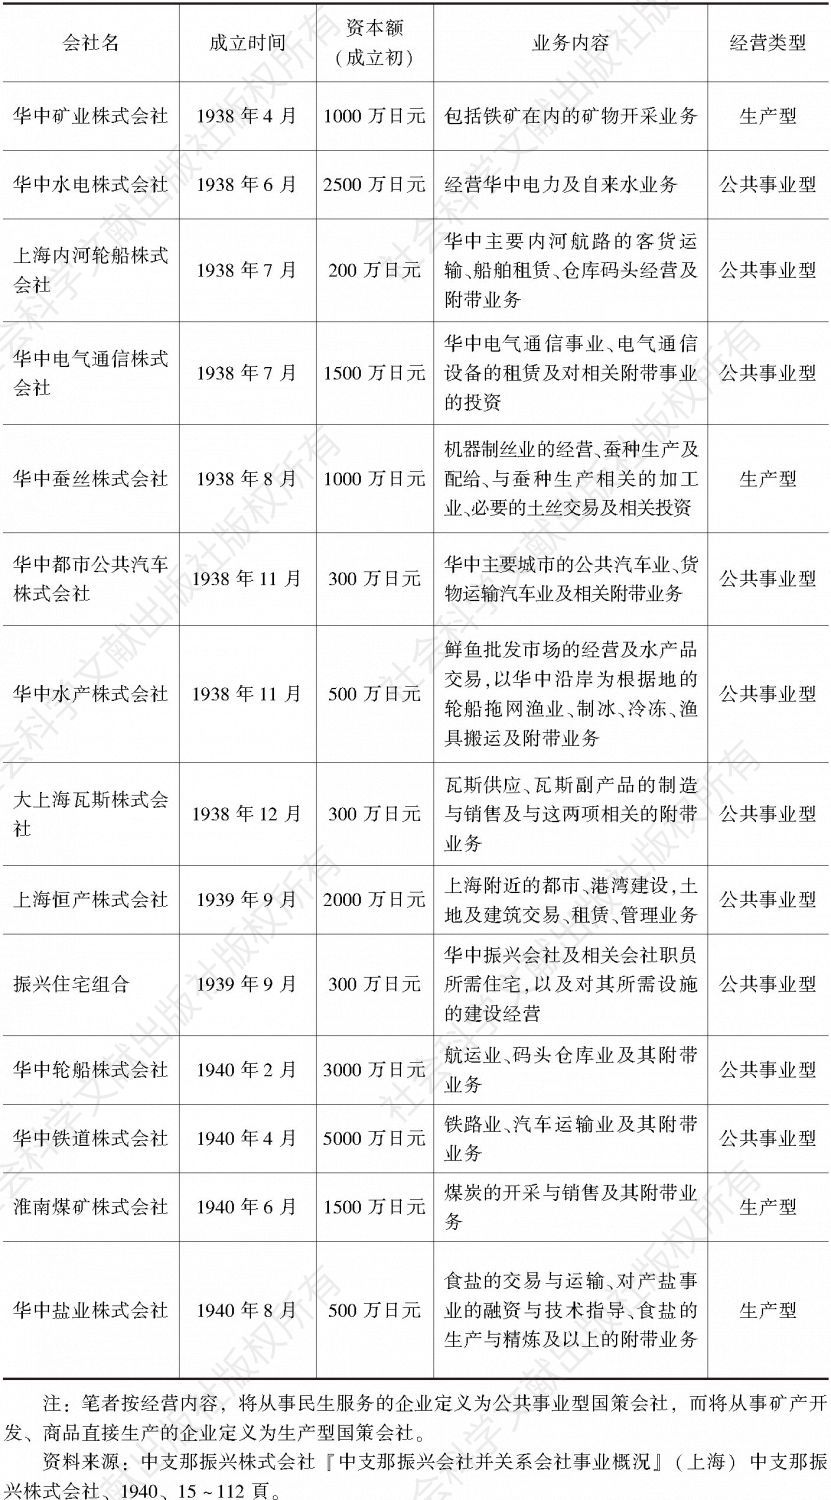 表1 1940年末华中国策会社集团各会社成员基本情况